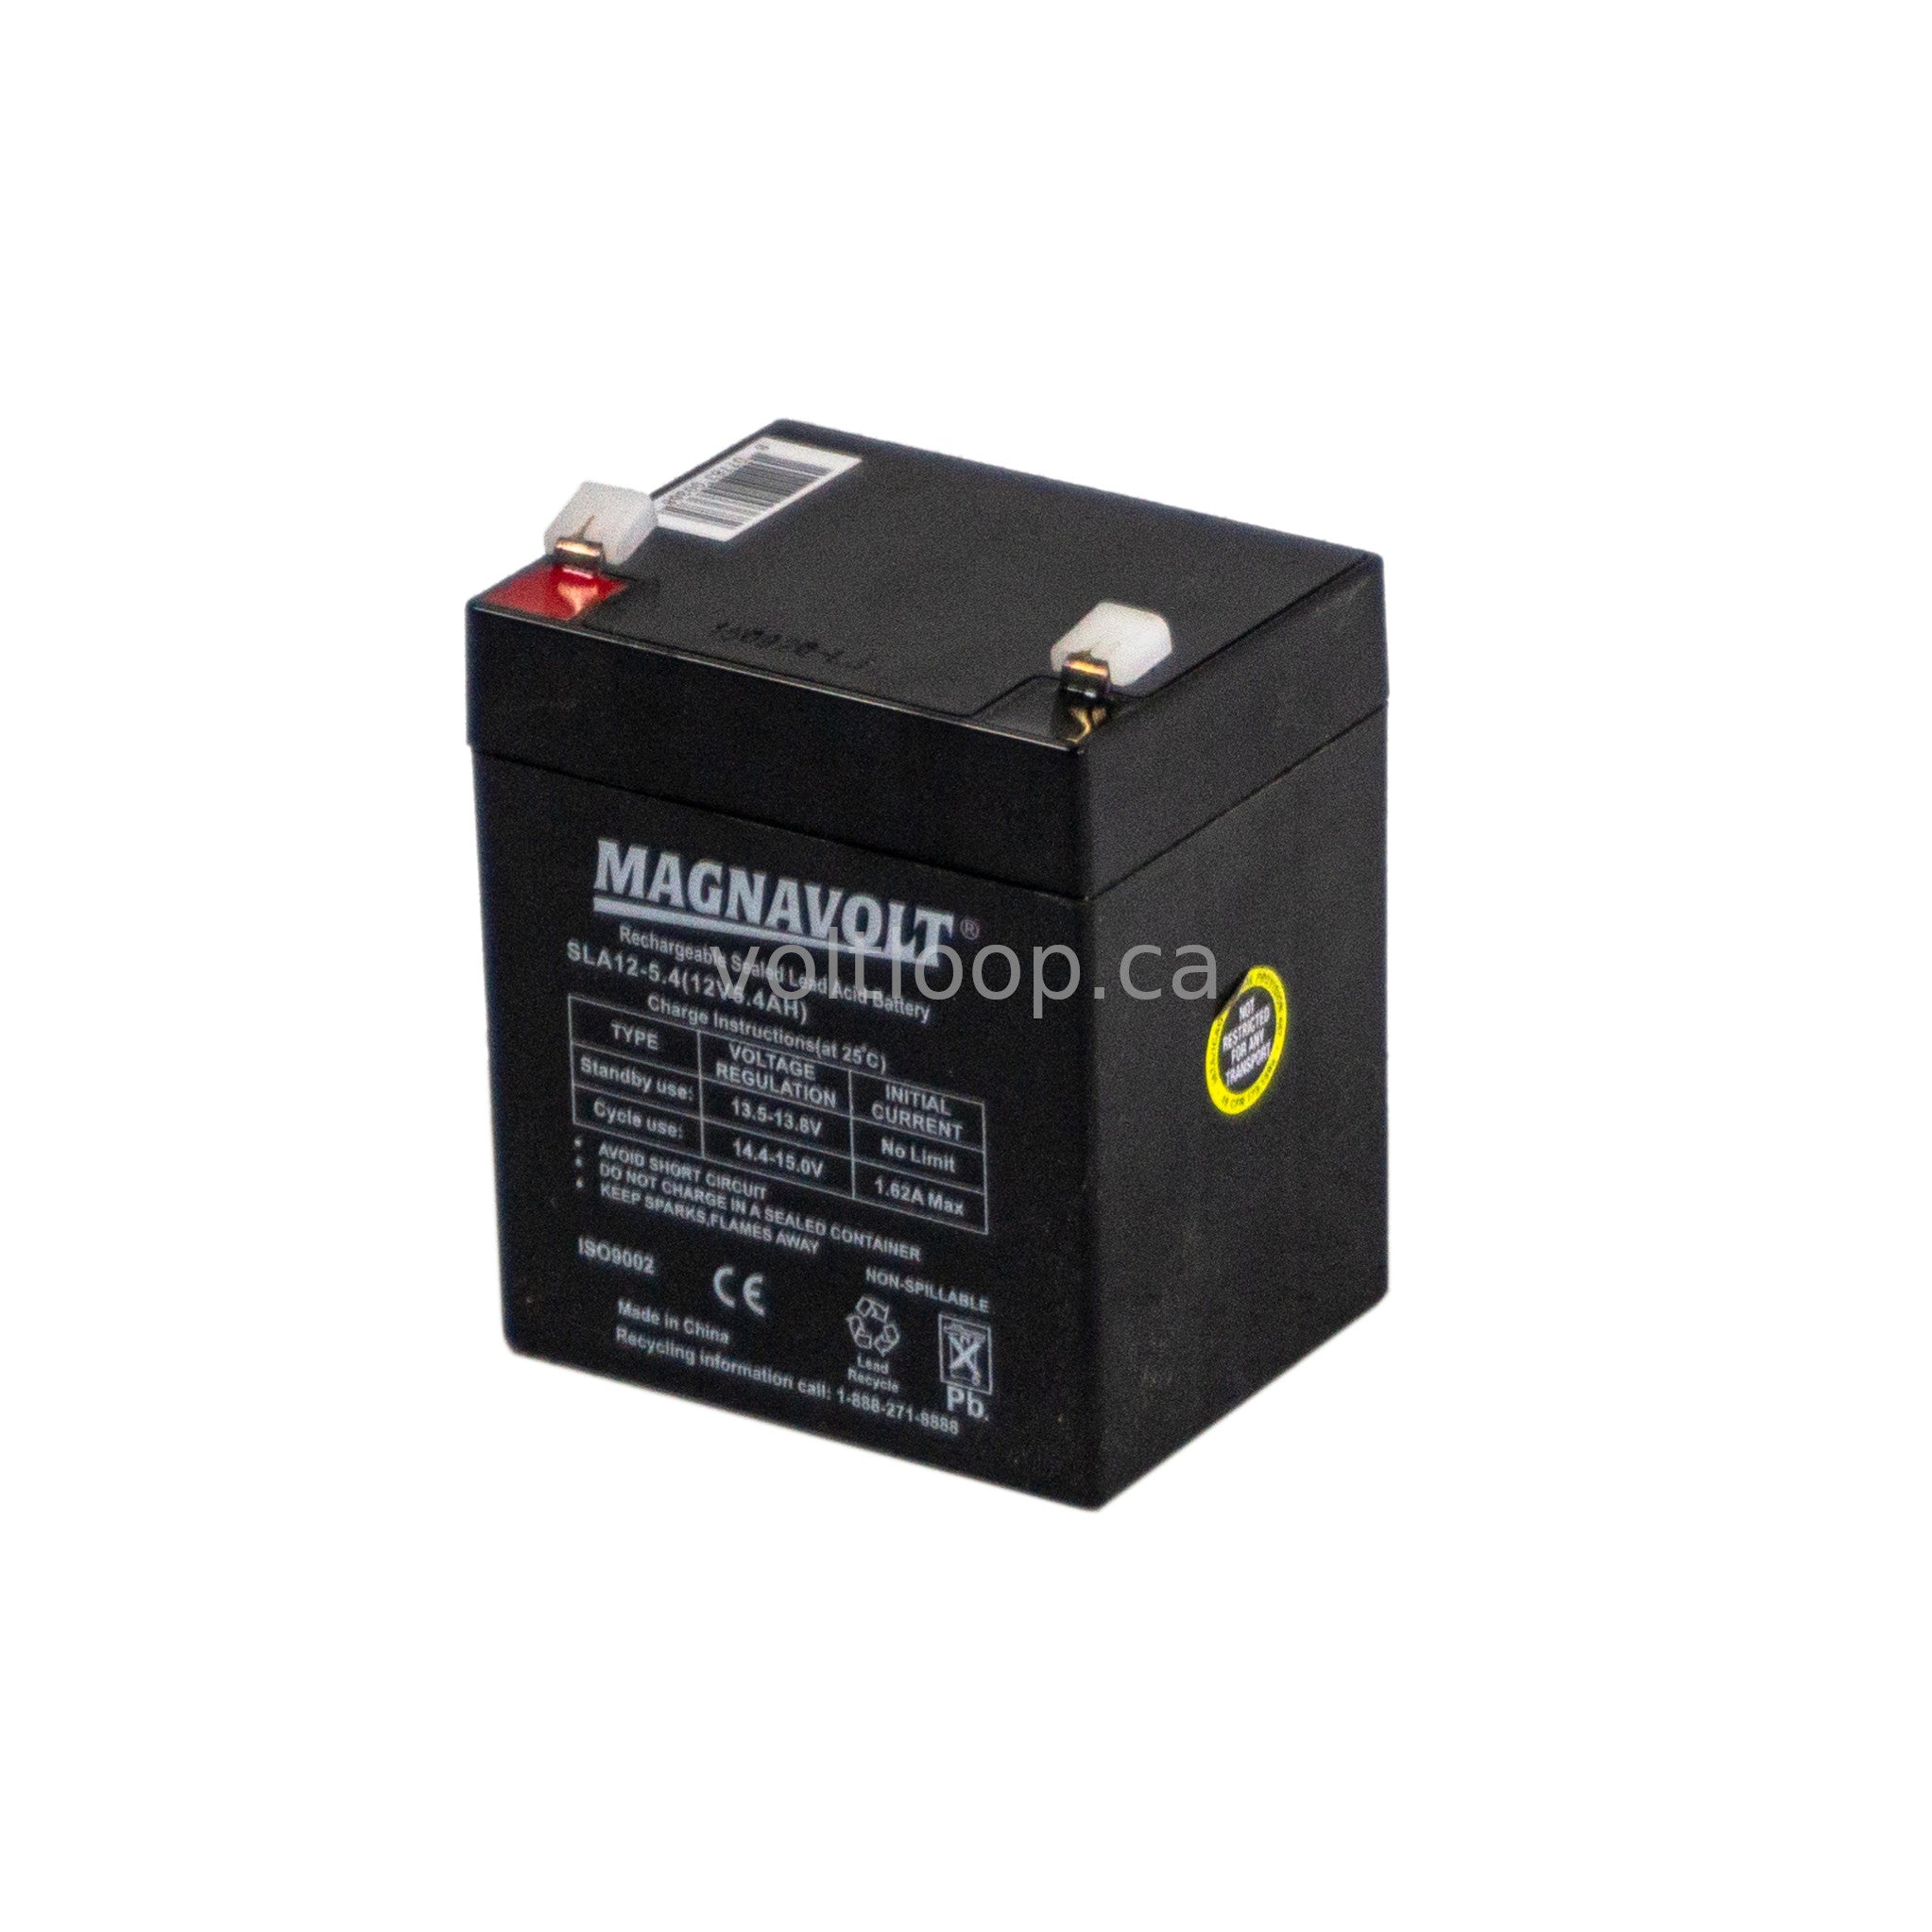 Magnavolt SLA12-5.4 12V 5.4 Ah Sealed Lead Acid Battery